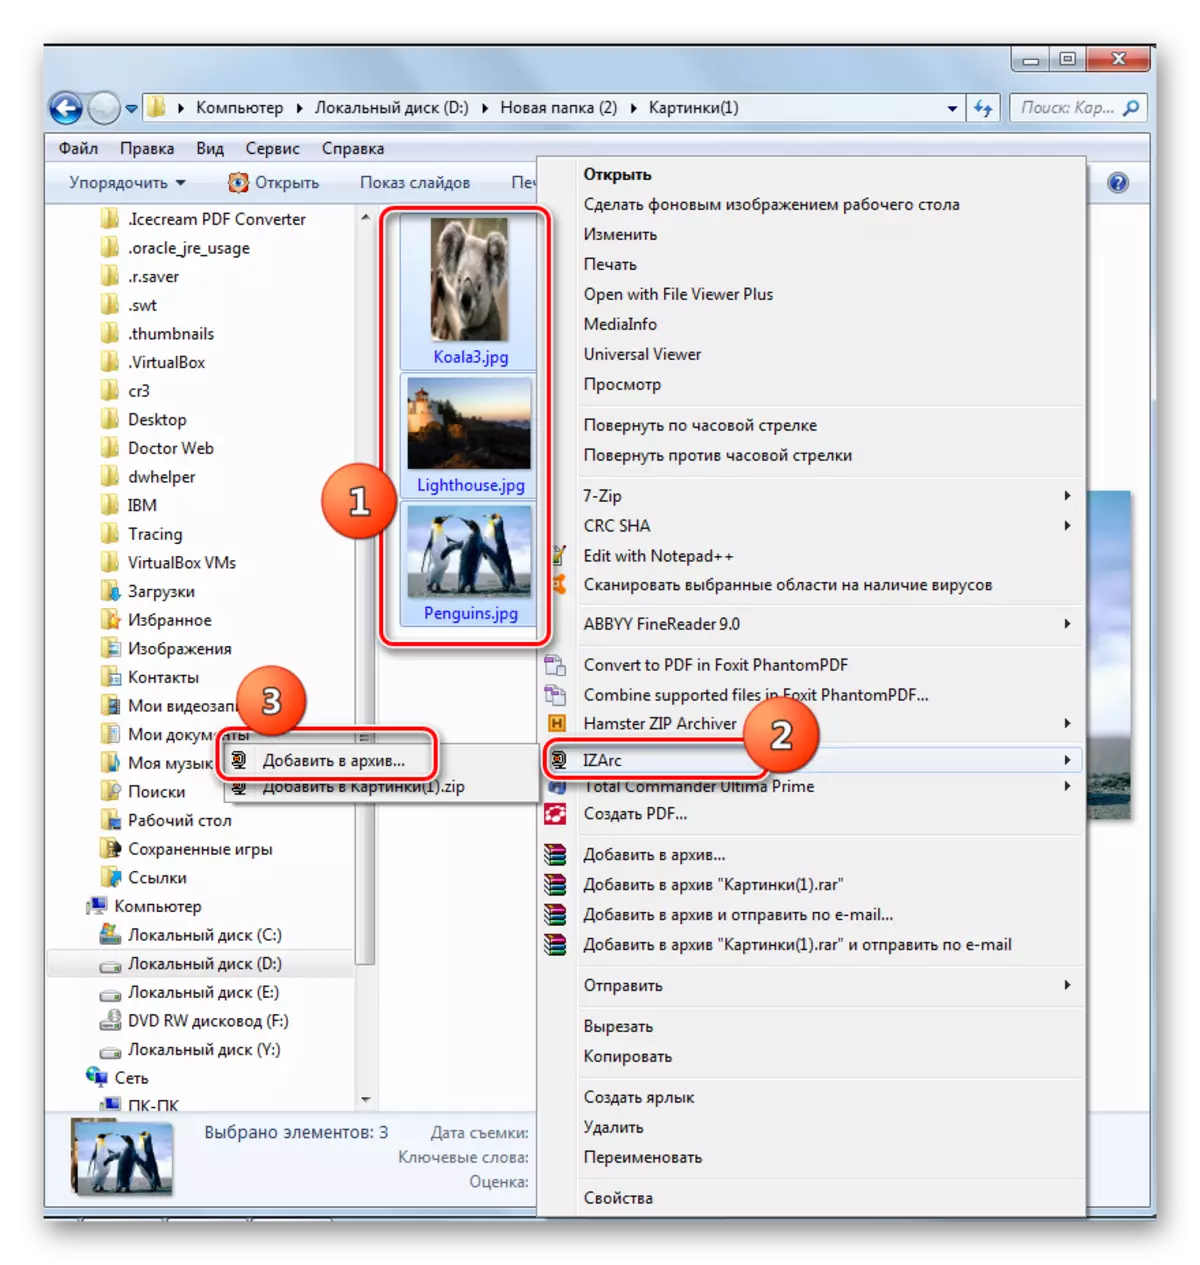 Izarc లో Windows Explorer యొక్క సందర్భ మెను ద్వారా ఒక జిప్ ఆర్కైవ్ సృష్టికి మార్పు